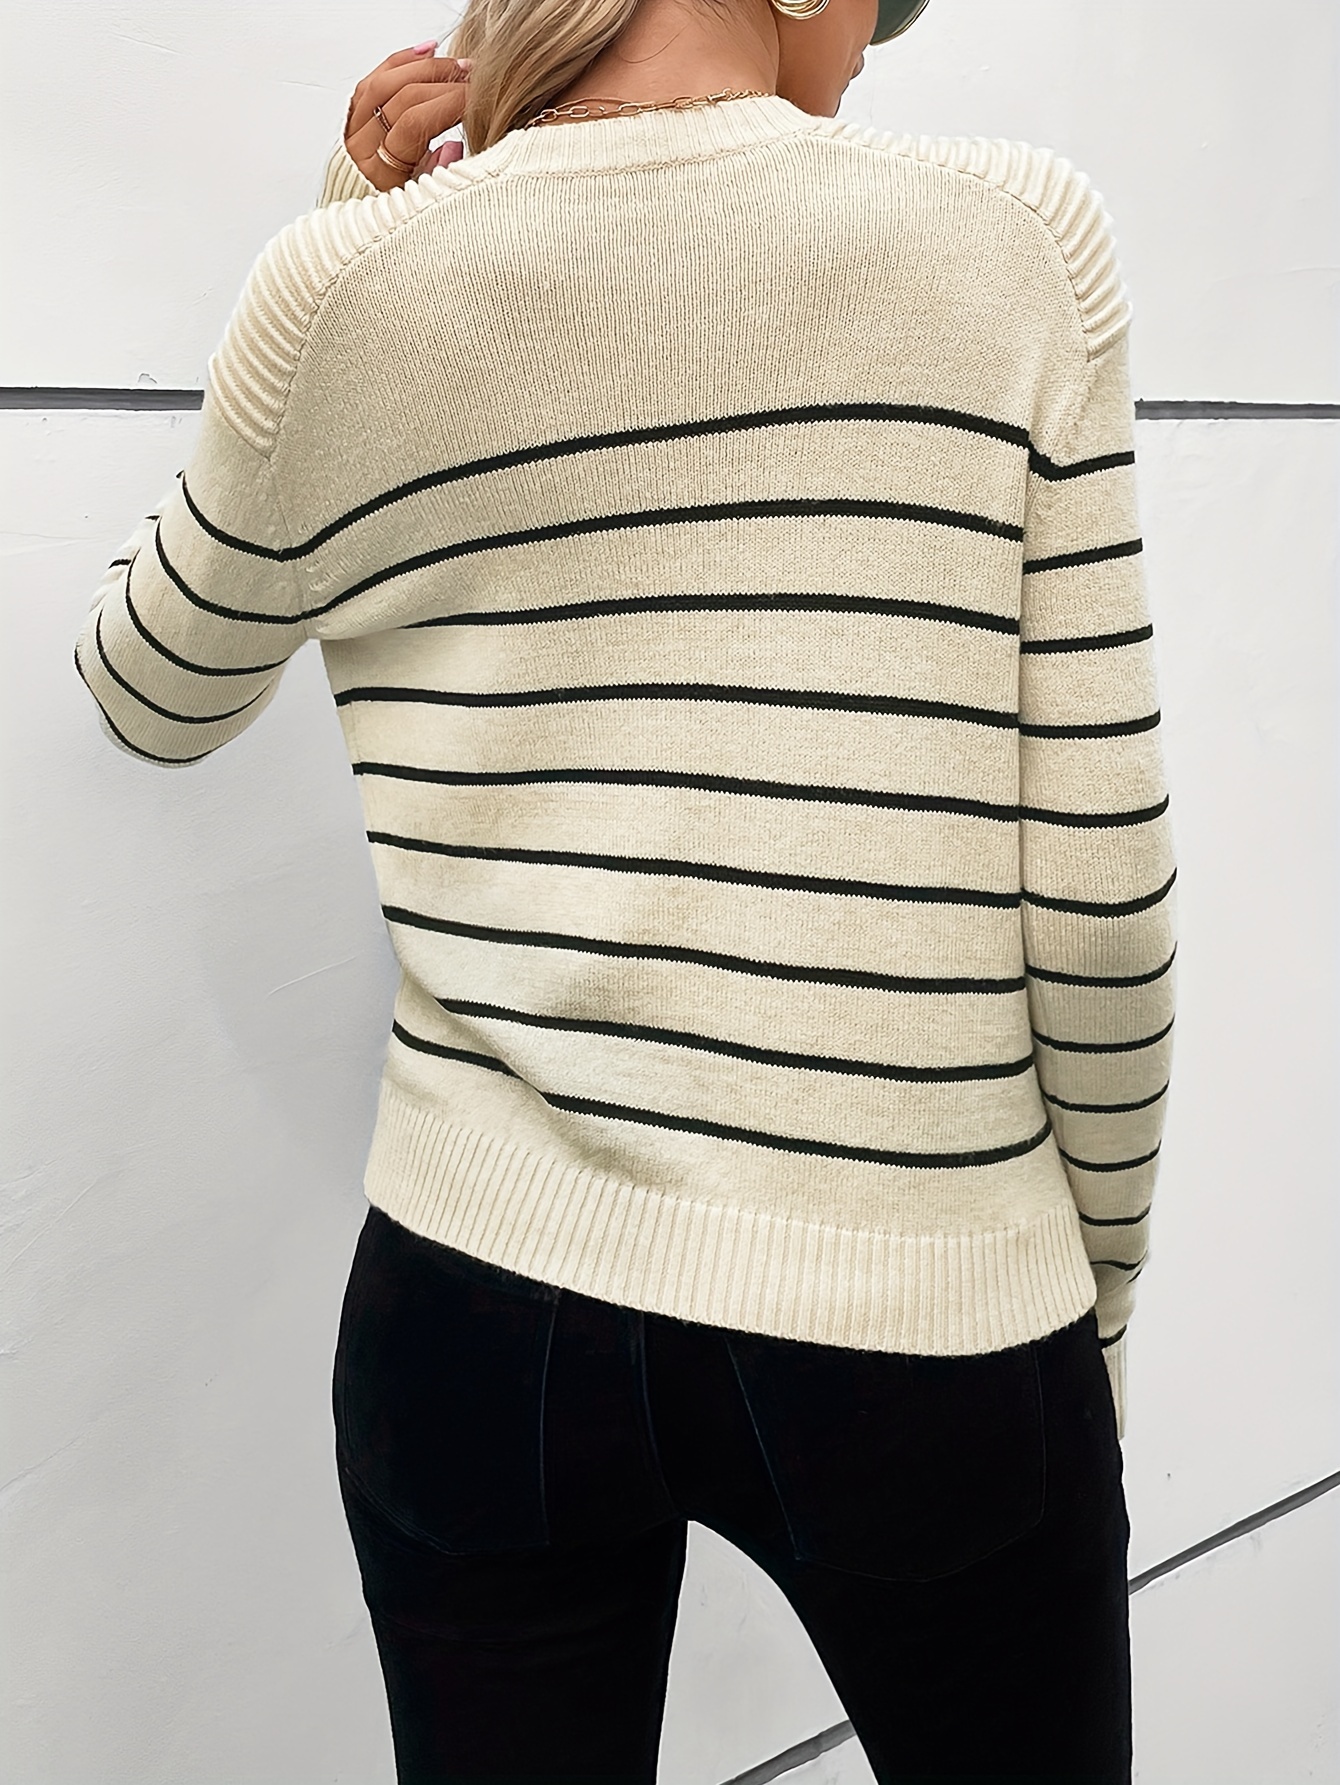 Bulgary | Black & Beige Striped Knit Sweater